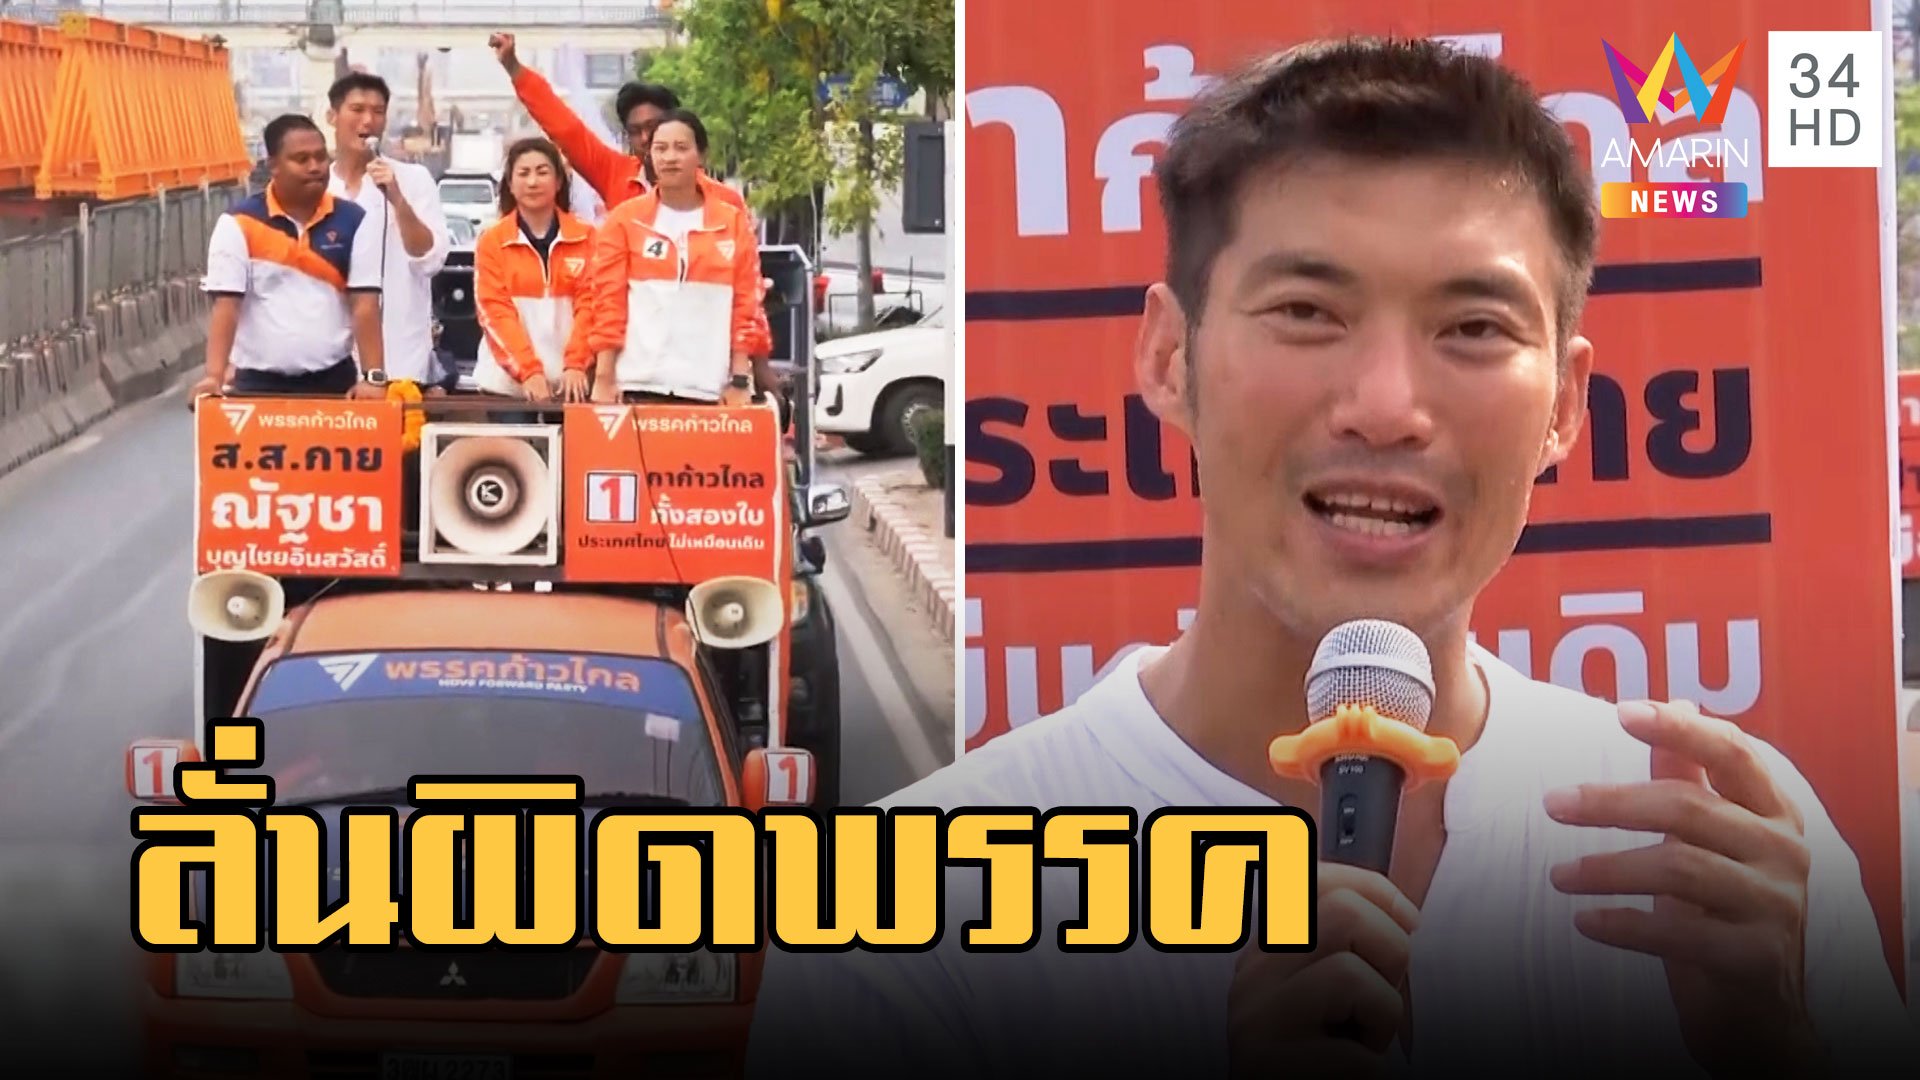 "ธนาธร" ขึ้นรถแห่หาเสียง ลั่นผิดขอโอกาสพรรคเพื่อไทยเปลี่ยนประเทศ  | ข่าวเที่ยงอมรินทร์ | 8 เม.ย. 66 | AMARIN TVHD34